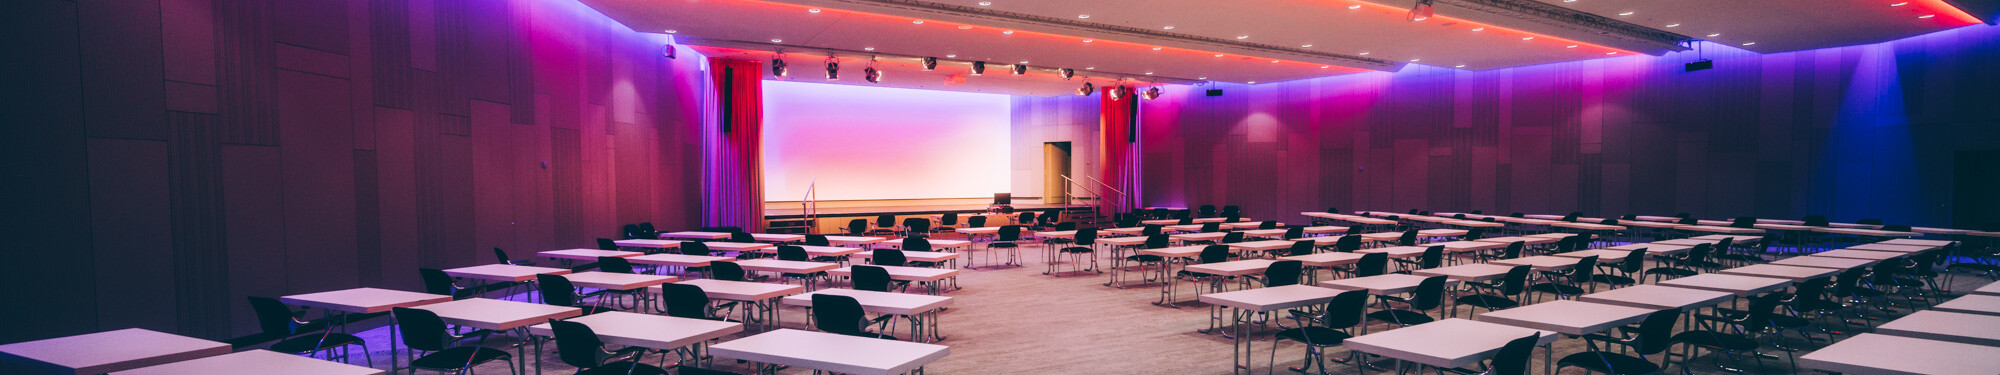 Stühle und Tische in einem lila beleuchteten Veranstaltungsraum im CCD Congress Center Düsseldorf